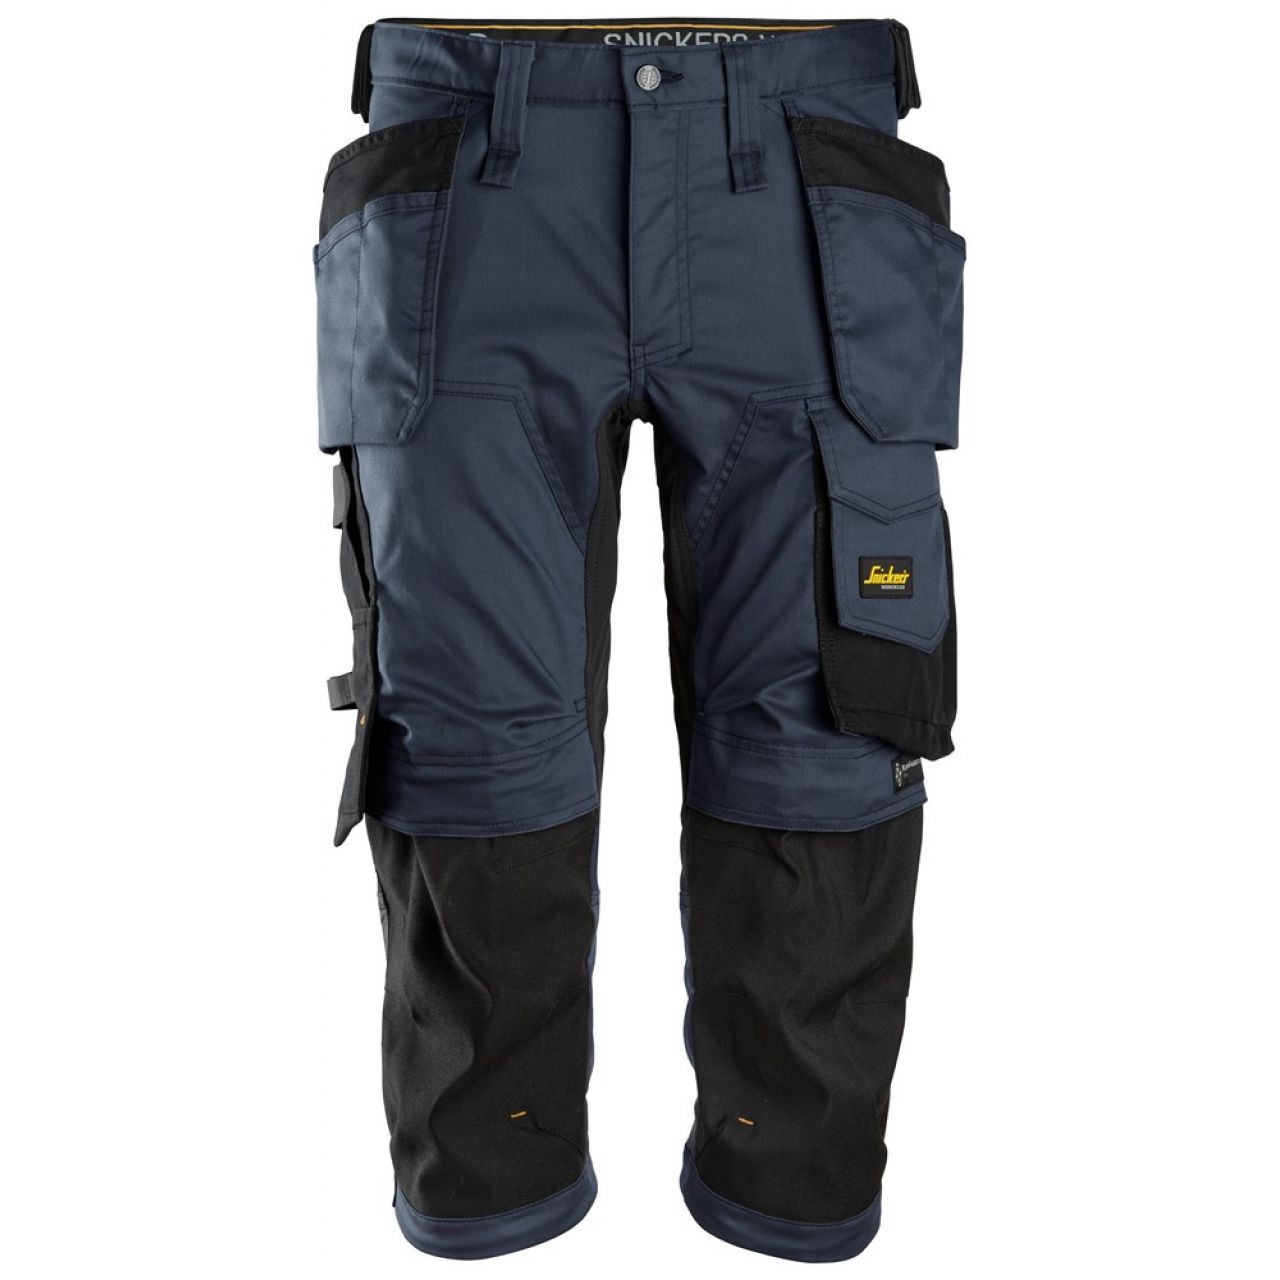 6142 Pantalones pirata de trabajo elasticos con bolsillos flotantes AllroundWork azul marino-negro talla 112